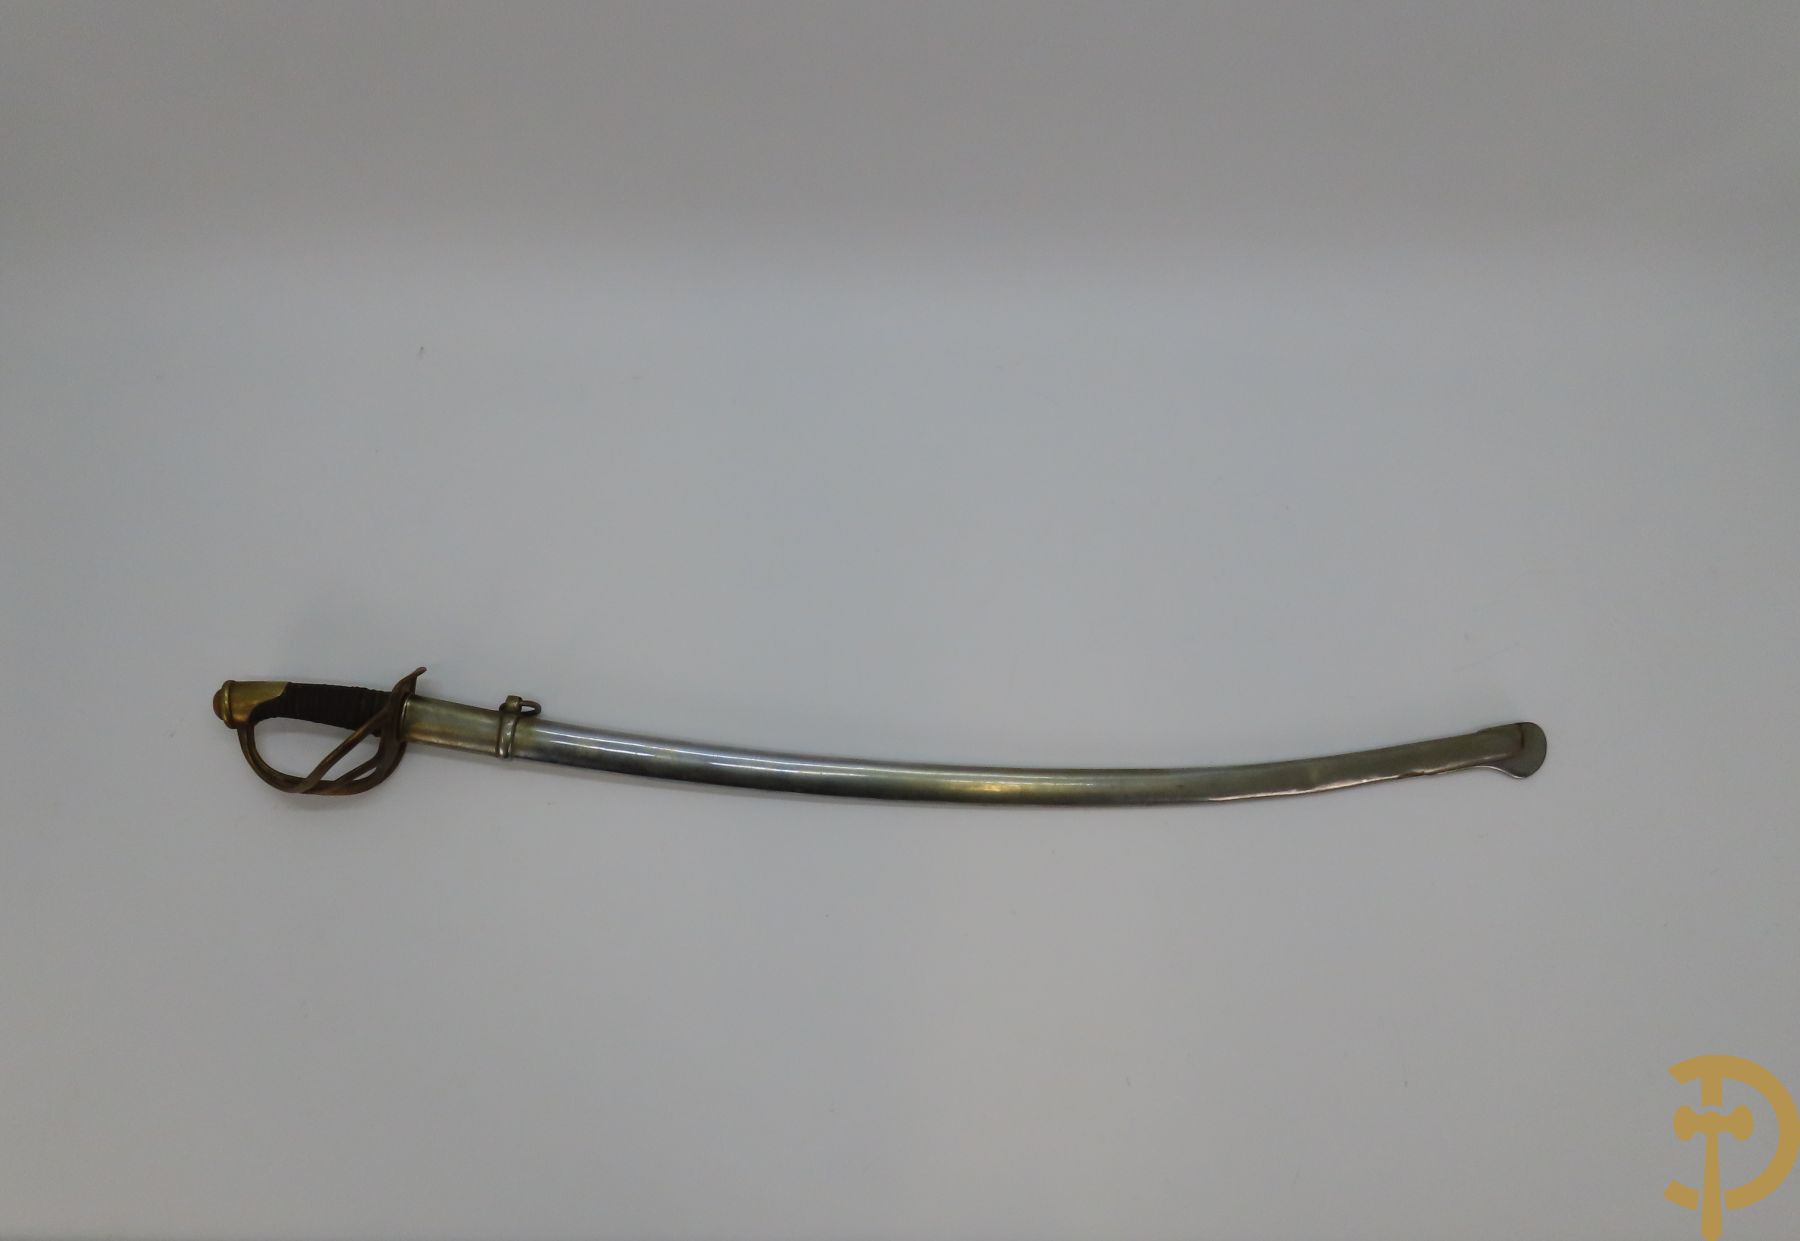 Franse cavalerie sabel met koperen handvat in schede, gestempeld en gemerkt 2868 - model 1822 - gemaakt in 1874